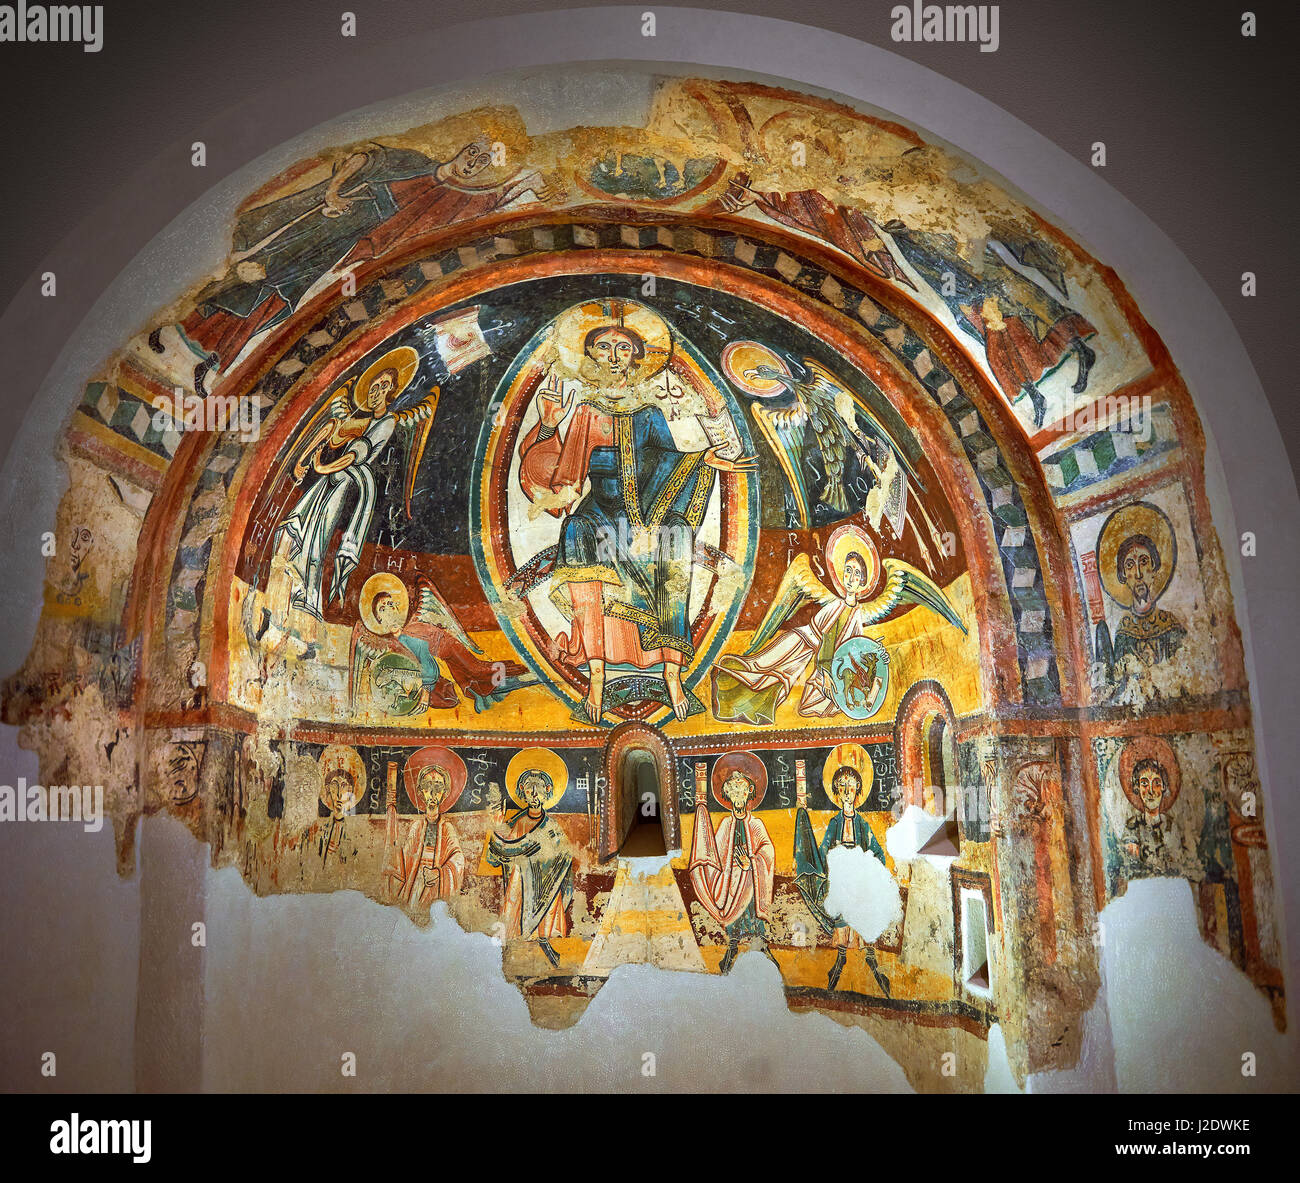 Fresques romanes représentant le Christ Pantocrator et les apôtres de l'église de Sant Miguel d'Engolasters, Les Escaldes, Andorre.. Peinte autour de Banque D'Images